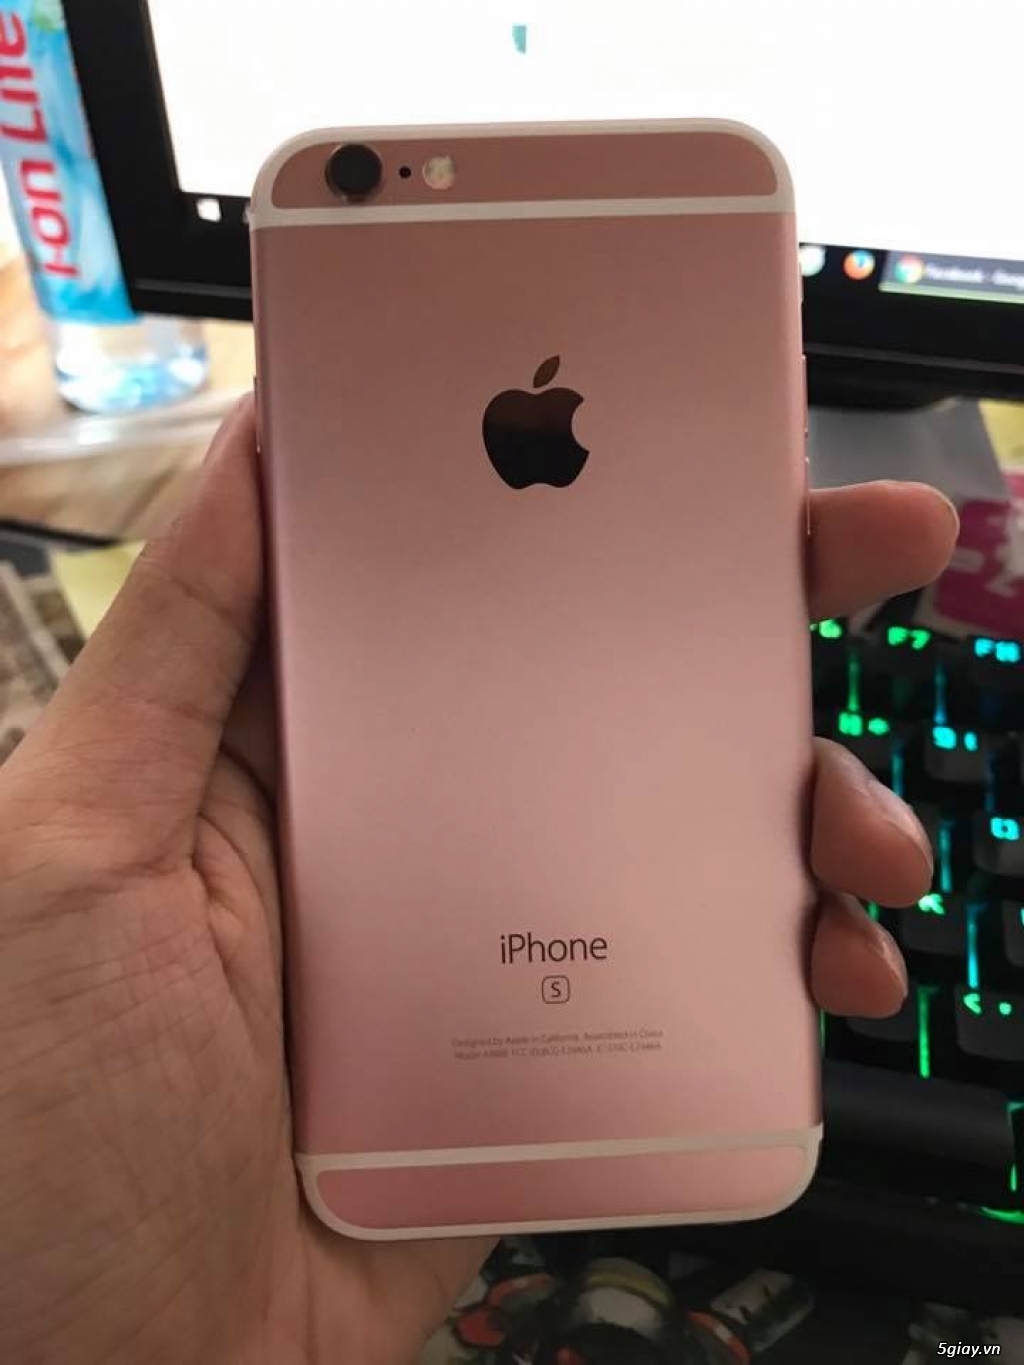 iphone 6s Rose Gold 16gb máy zin all chưa vêt trầy